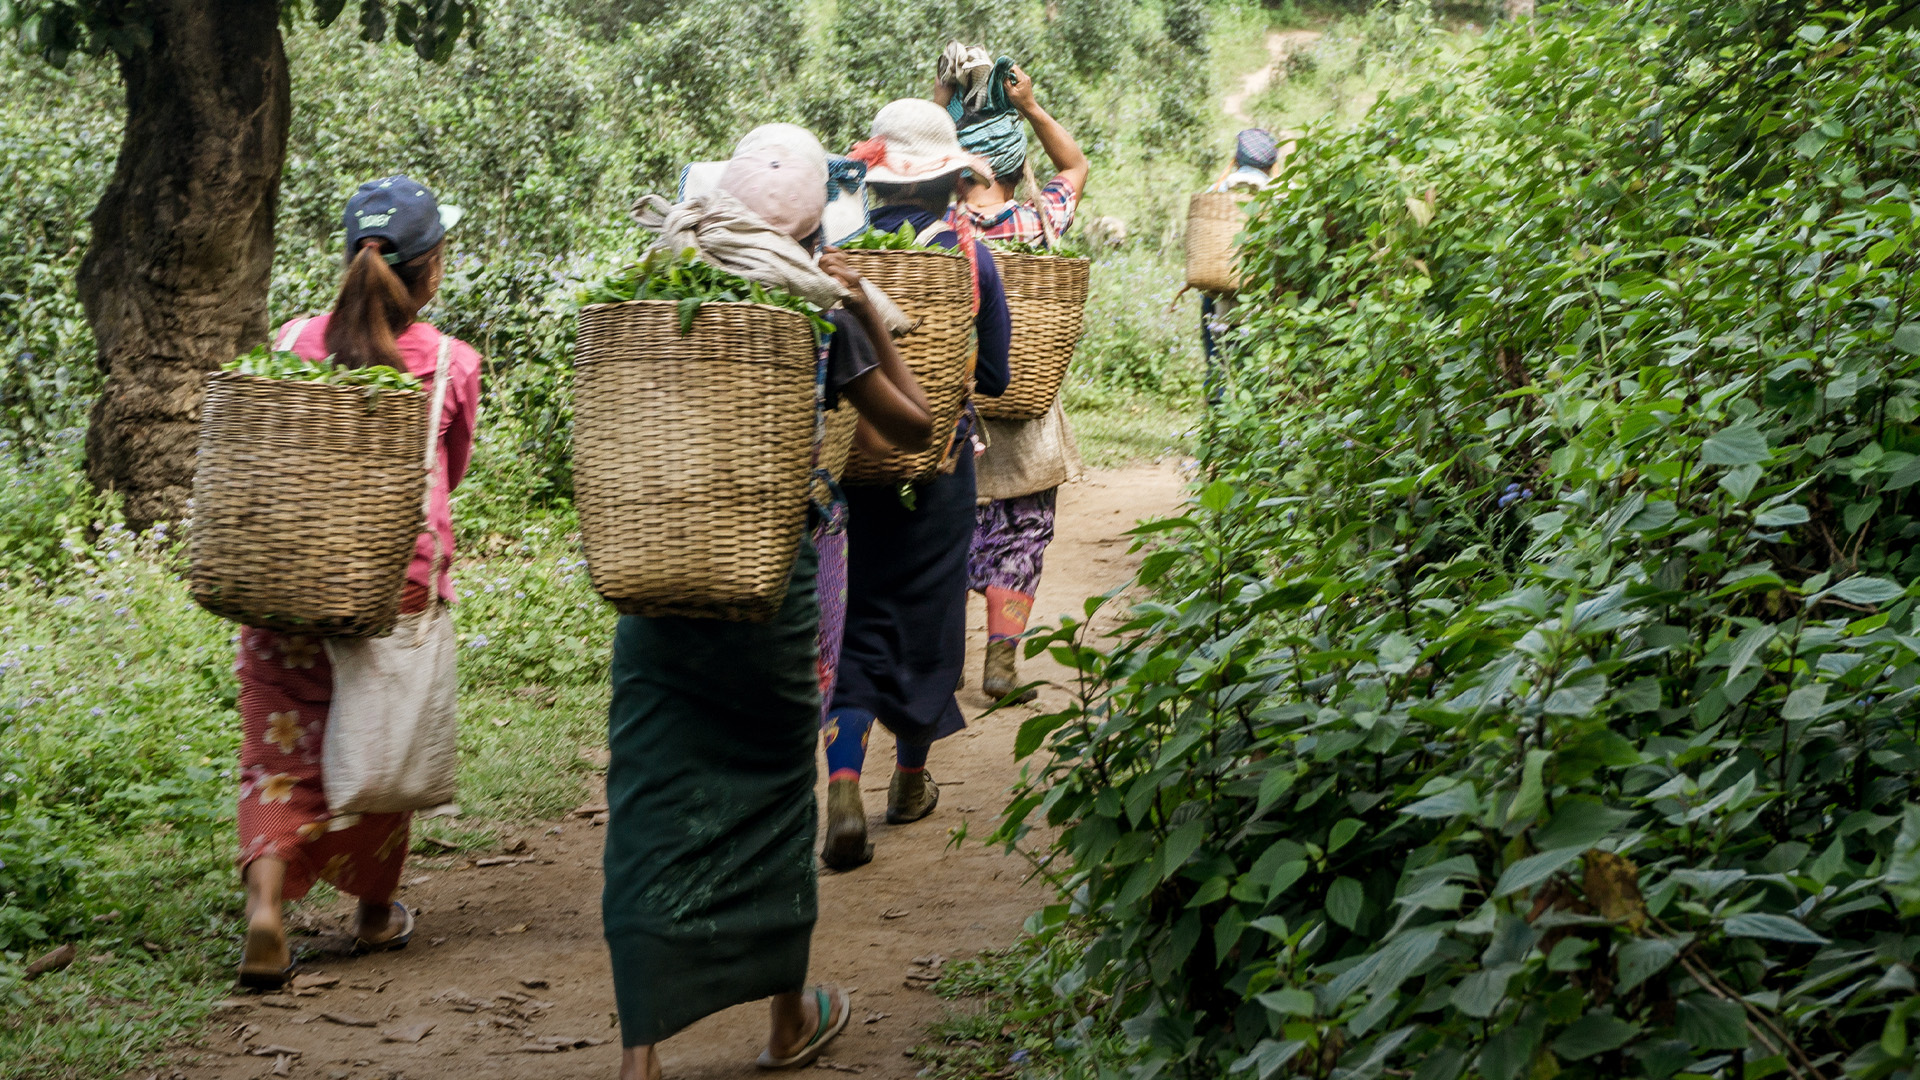 Women walking away after harvesting